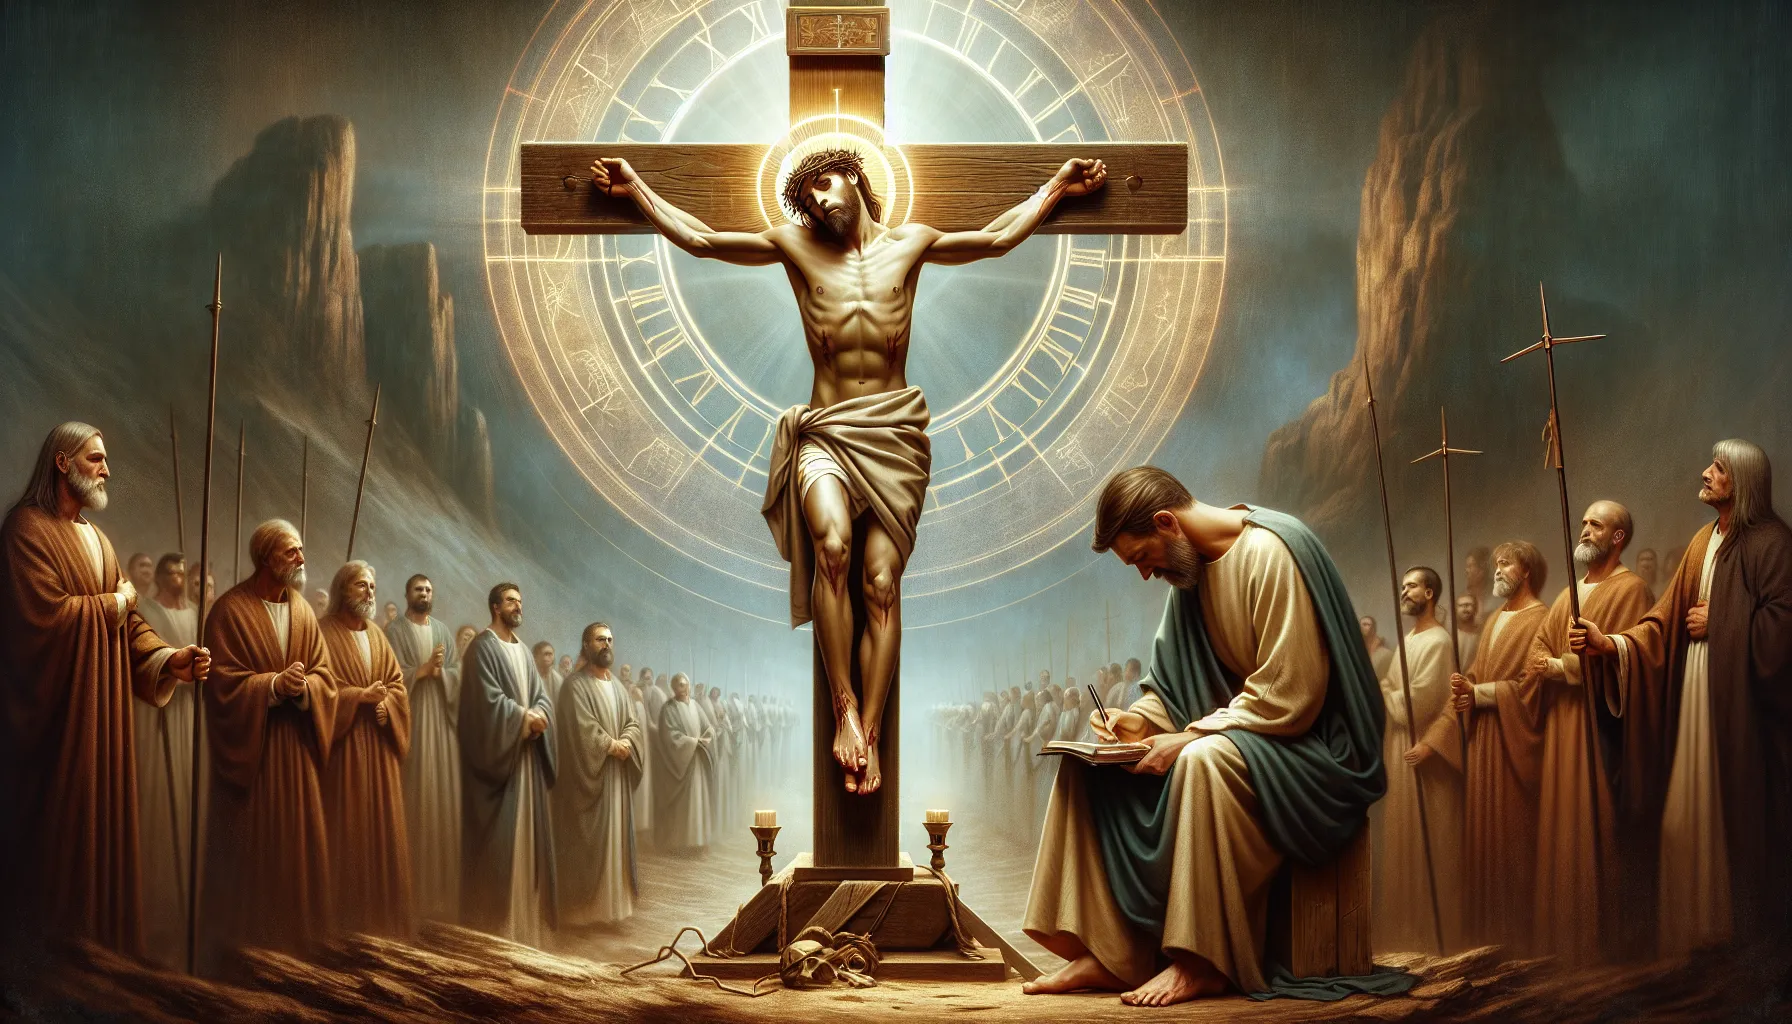 Imagen de Jesucristo siendo crucificado en la cruz, simbolizando su sacrificio por la sanidad según la Biblia.